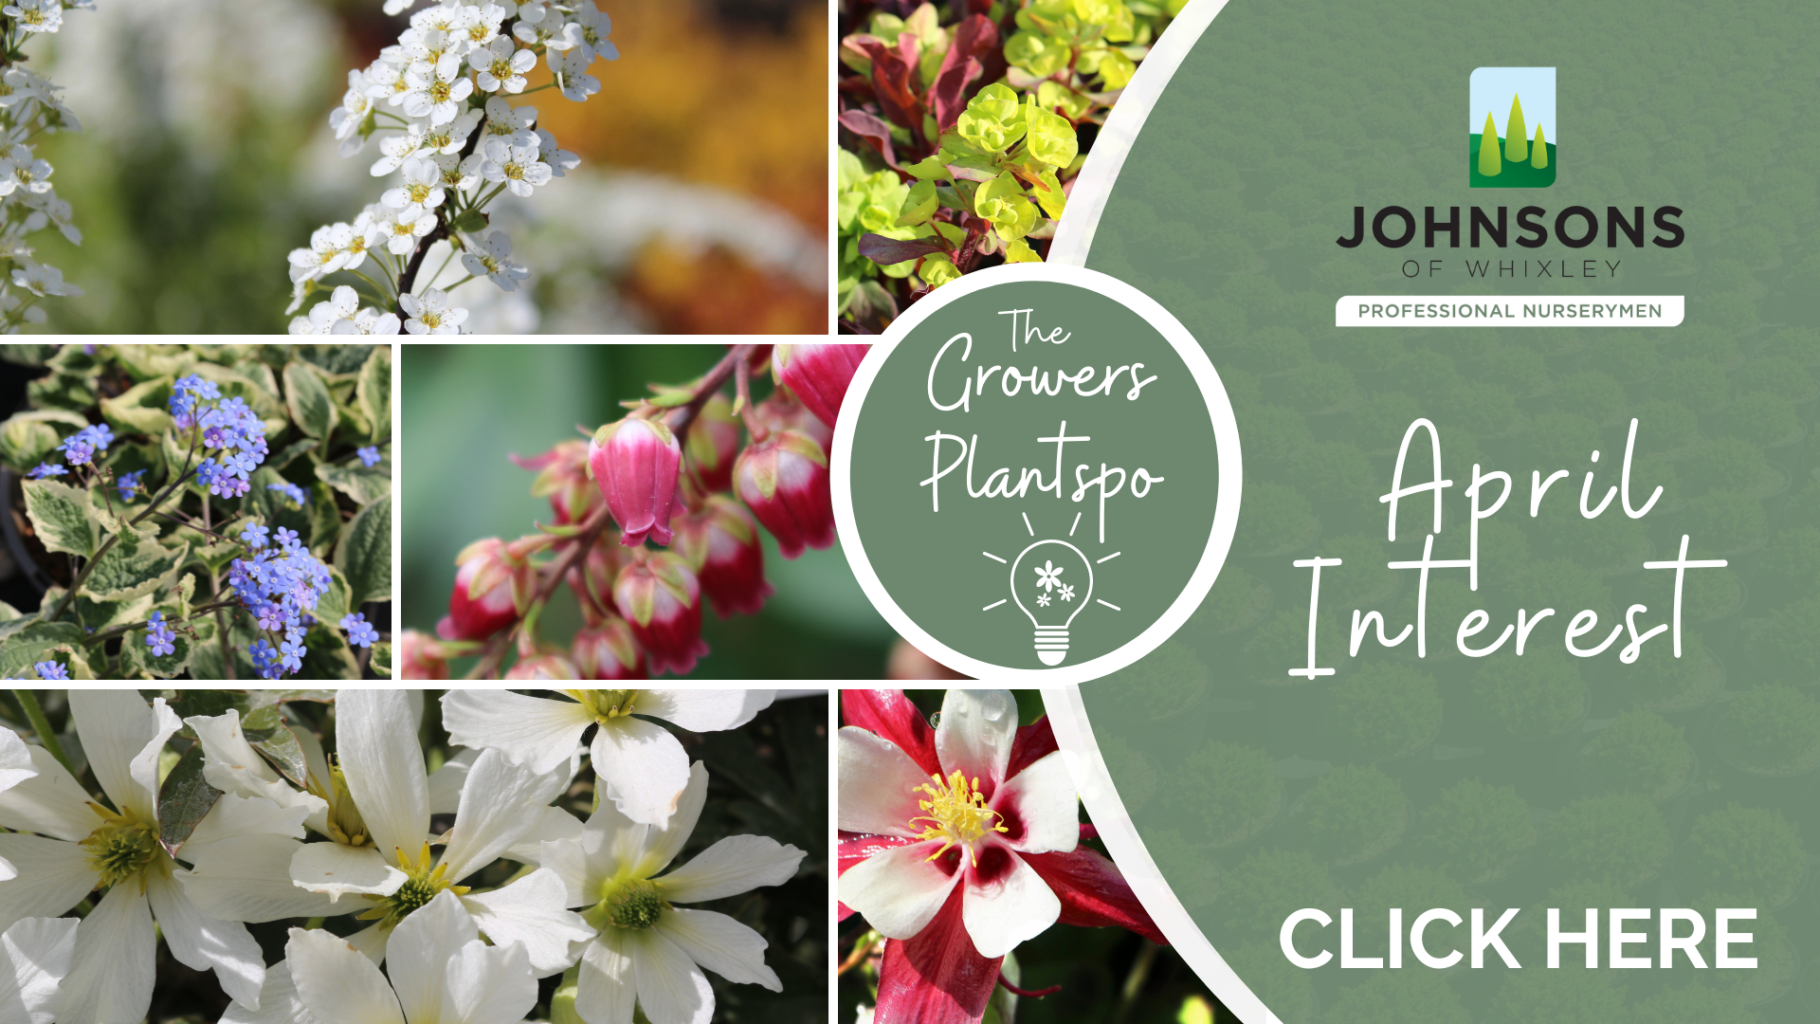 The Growers Plantspo - Plants for April Interest